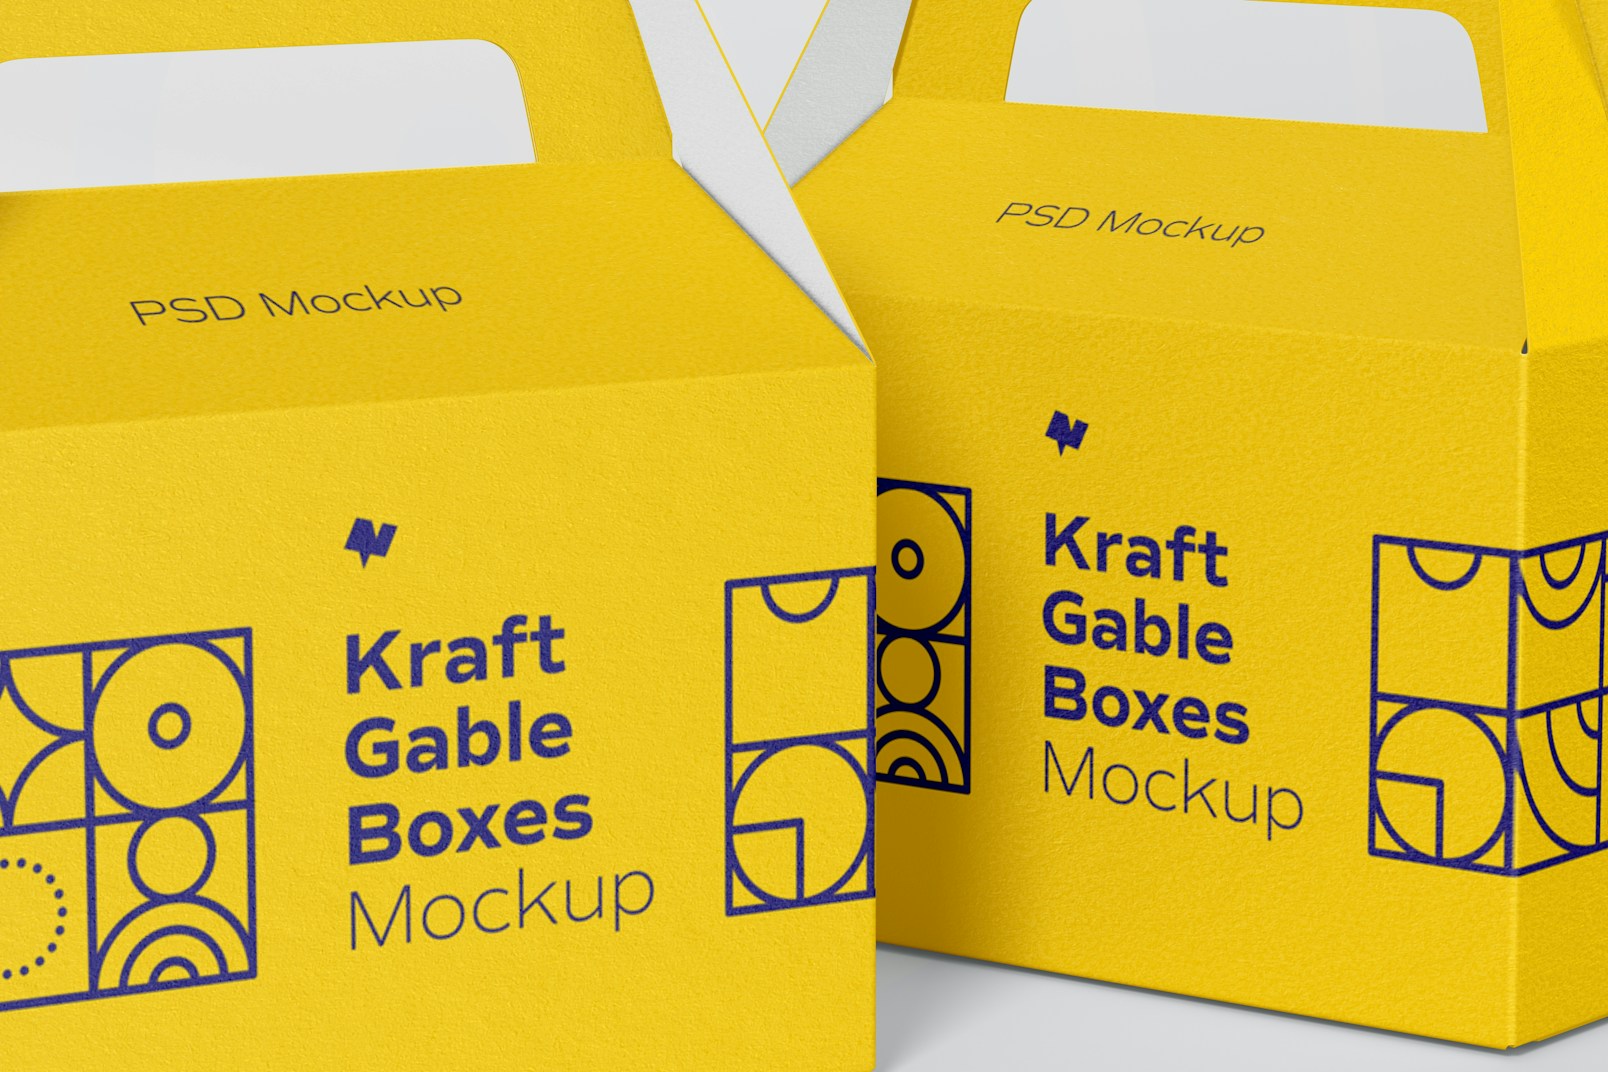 Kraft Gable Boxes Mockup, Close Up